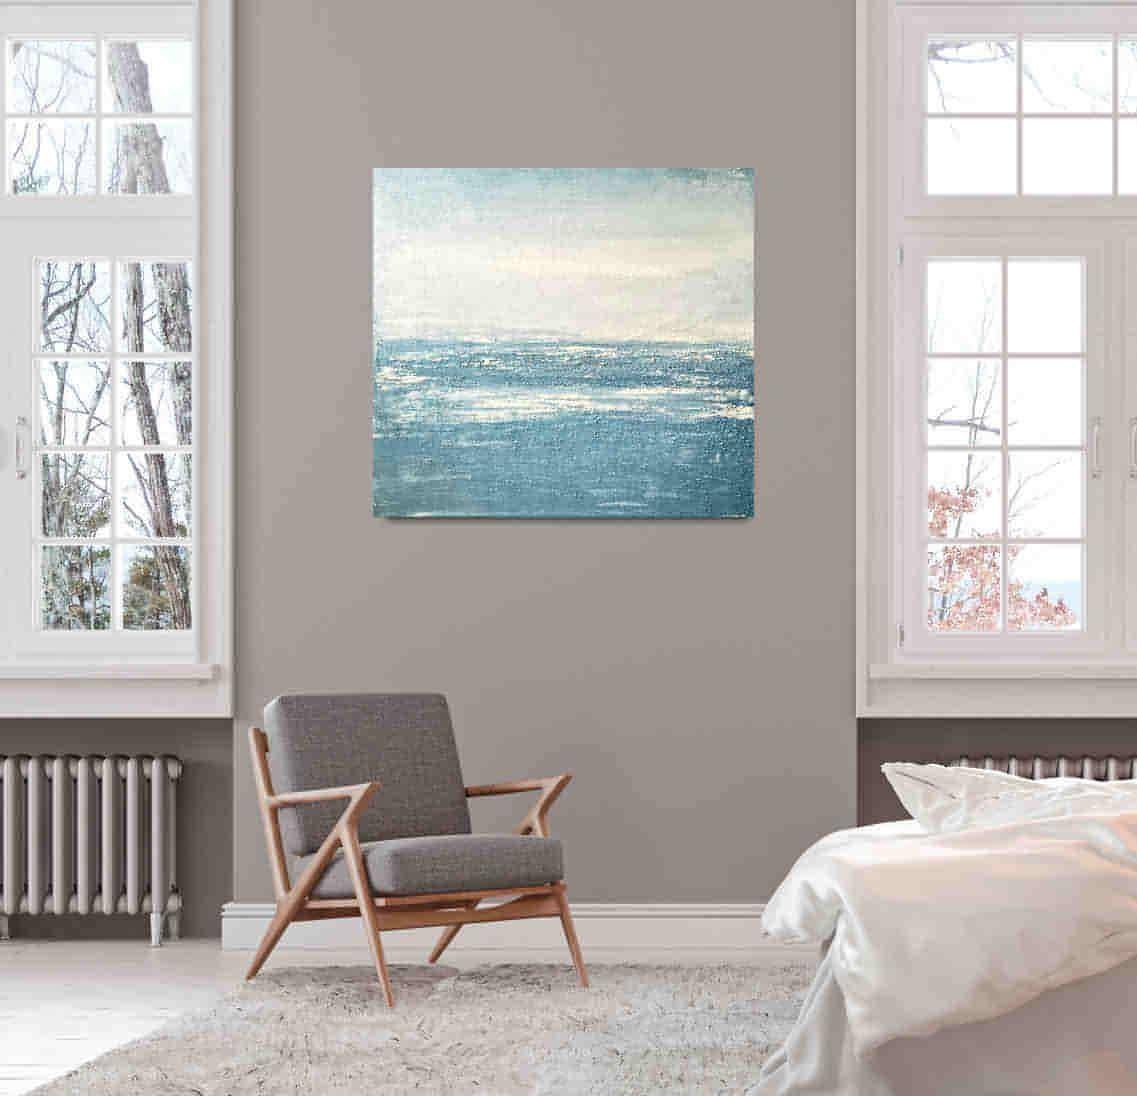 Auftragskunst, abstrakte Bilder, Abstraktes maritimes Gemälde in Blautönen Küstennebel,blaues-bild-mit-wellen-auftragsmalerei, abstrakte Bilder kaufen ,